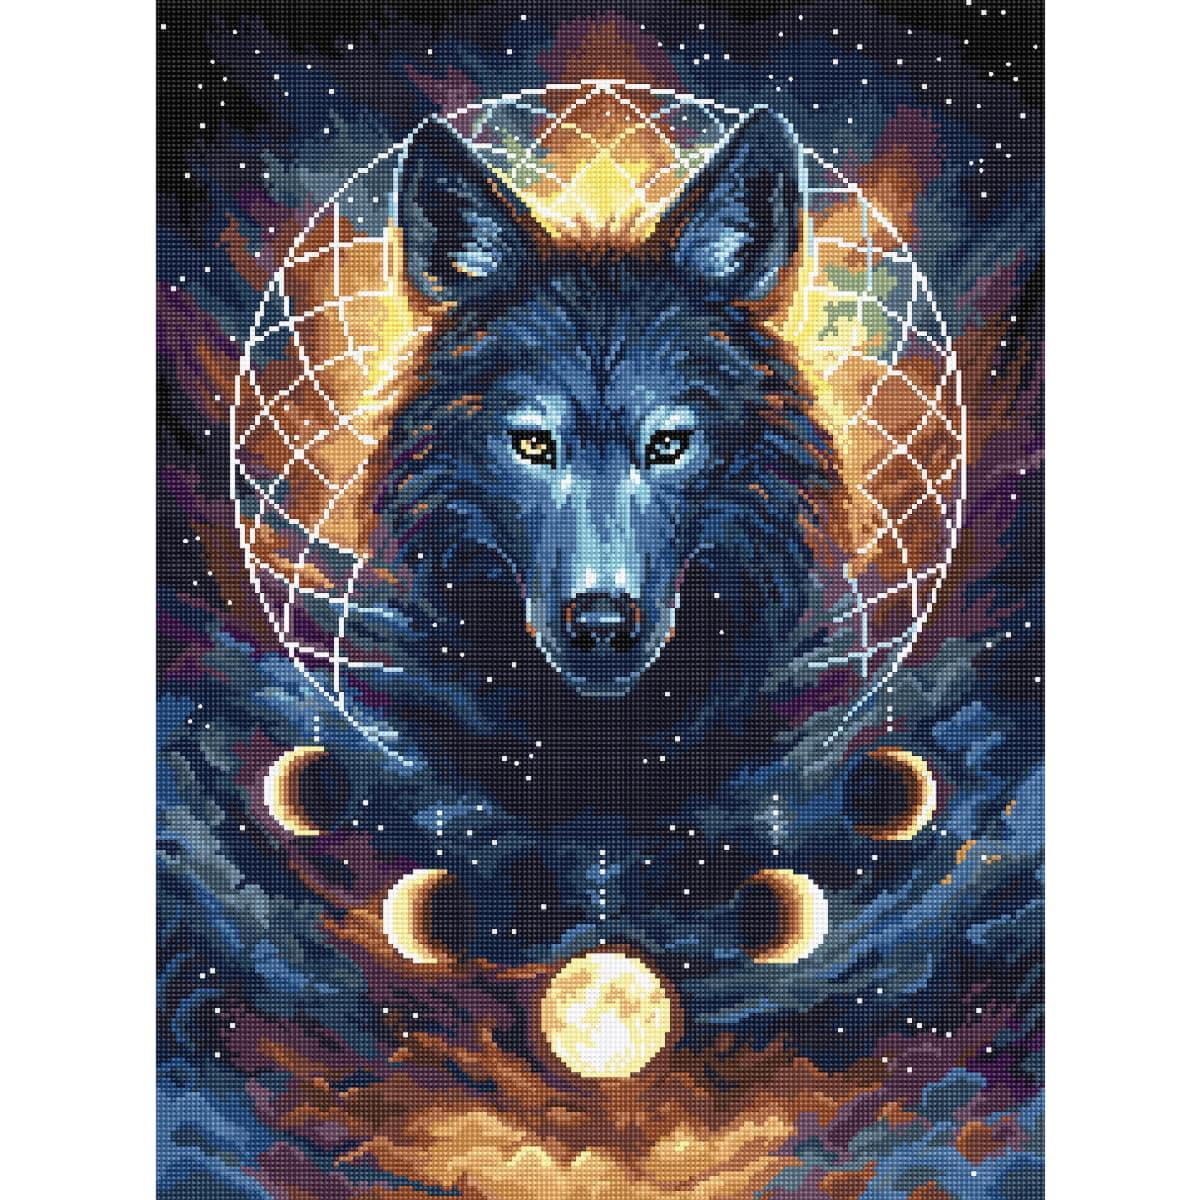 Eine lebendige Illustration eines Wolfes mit blauem Fell...